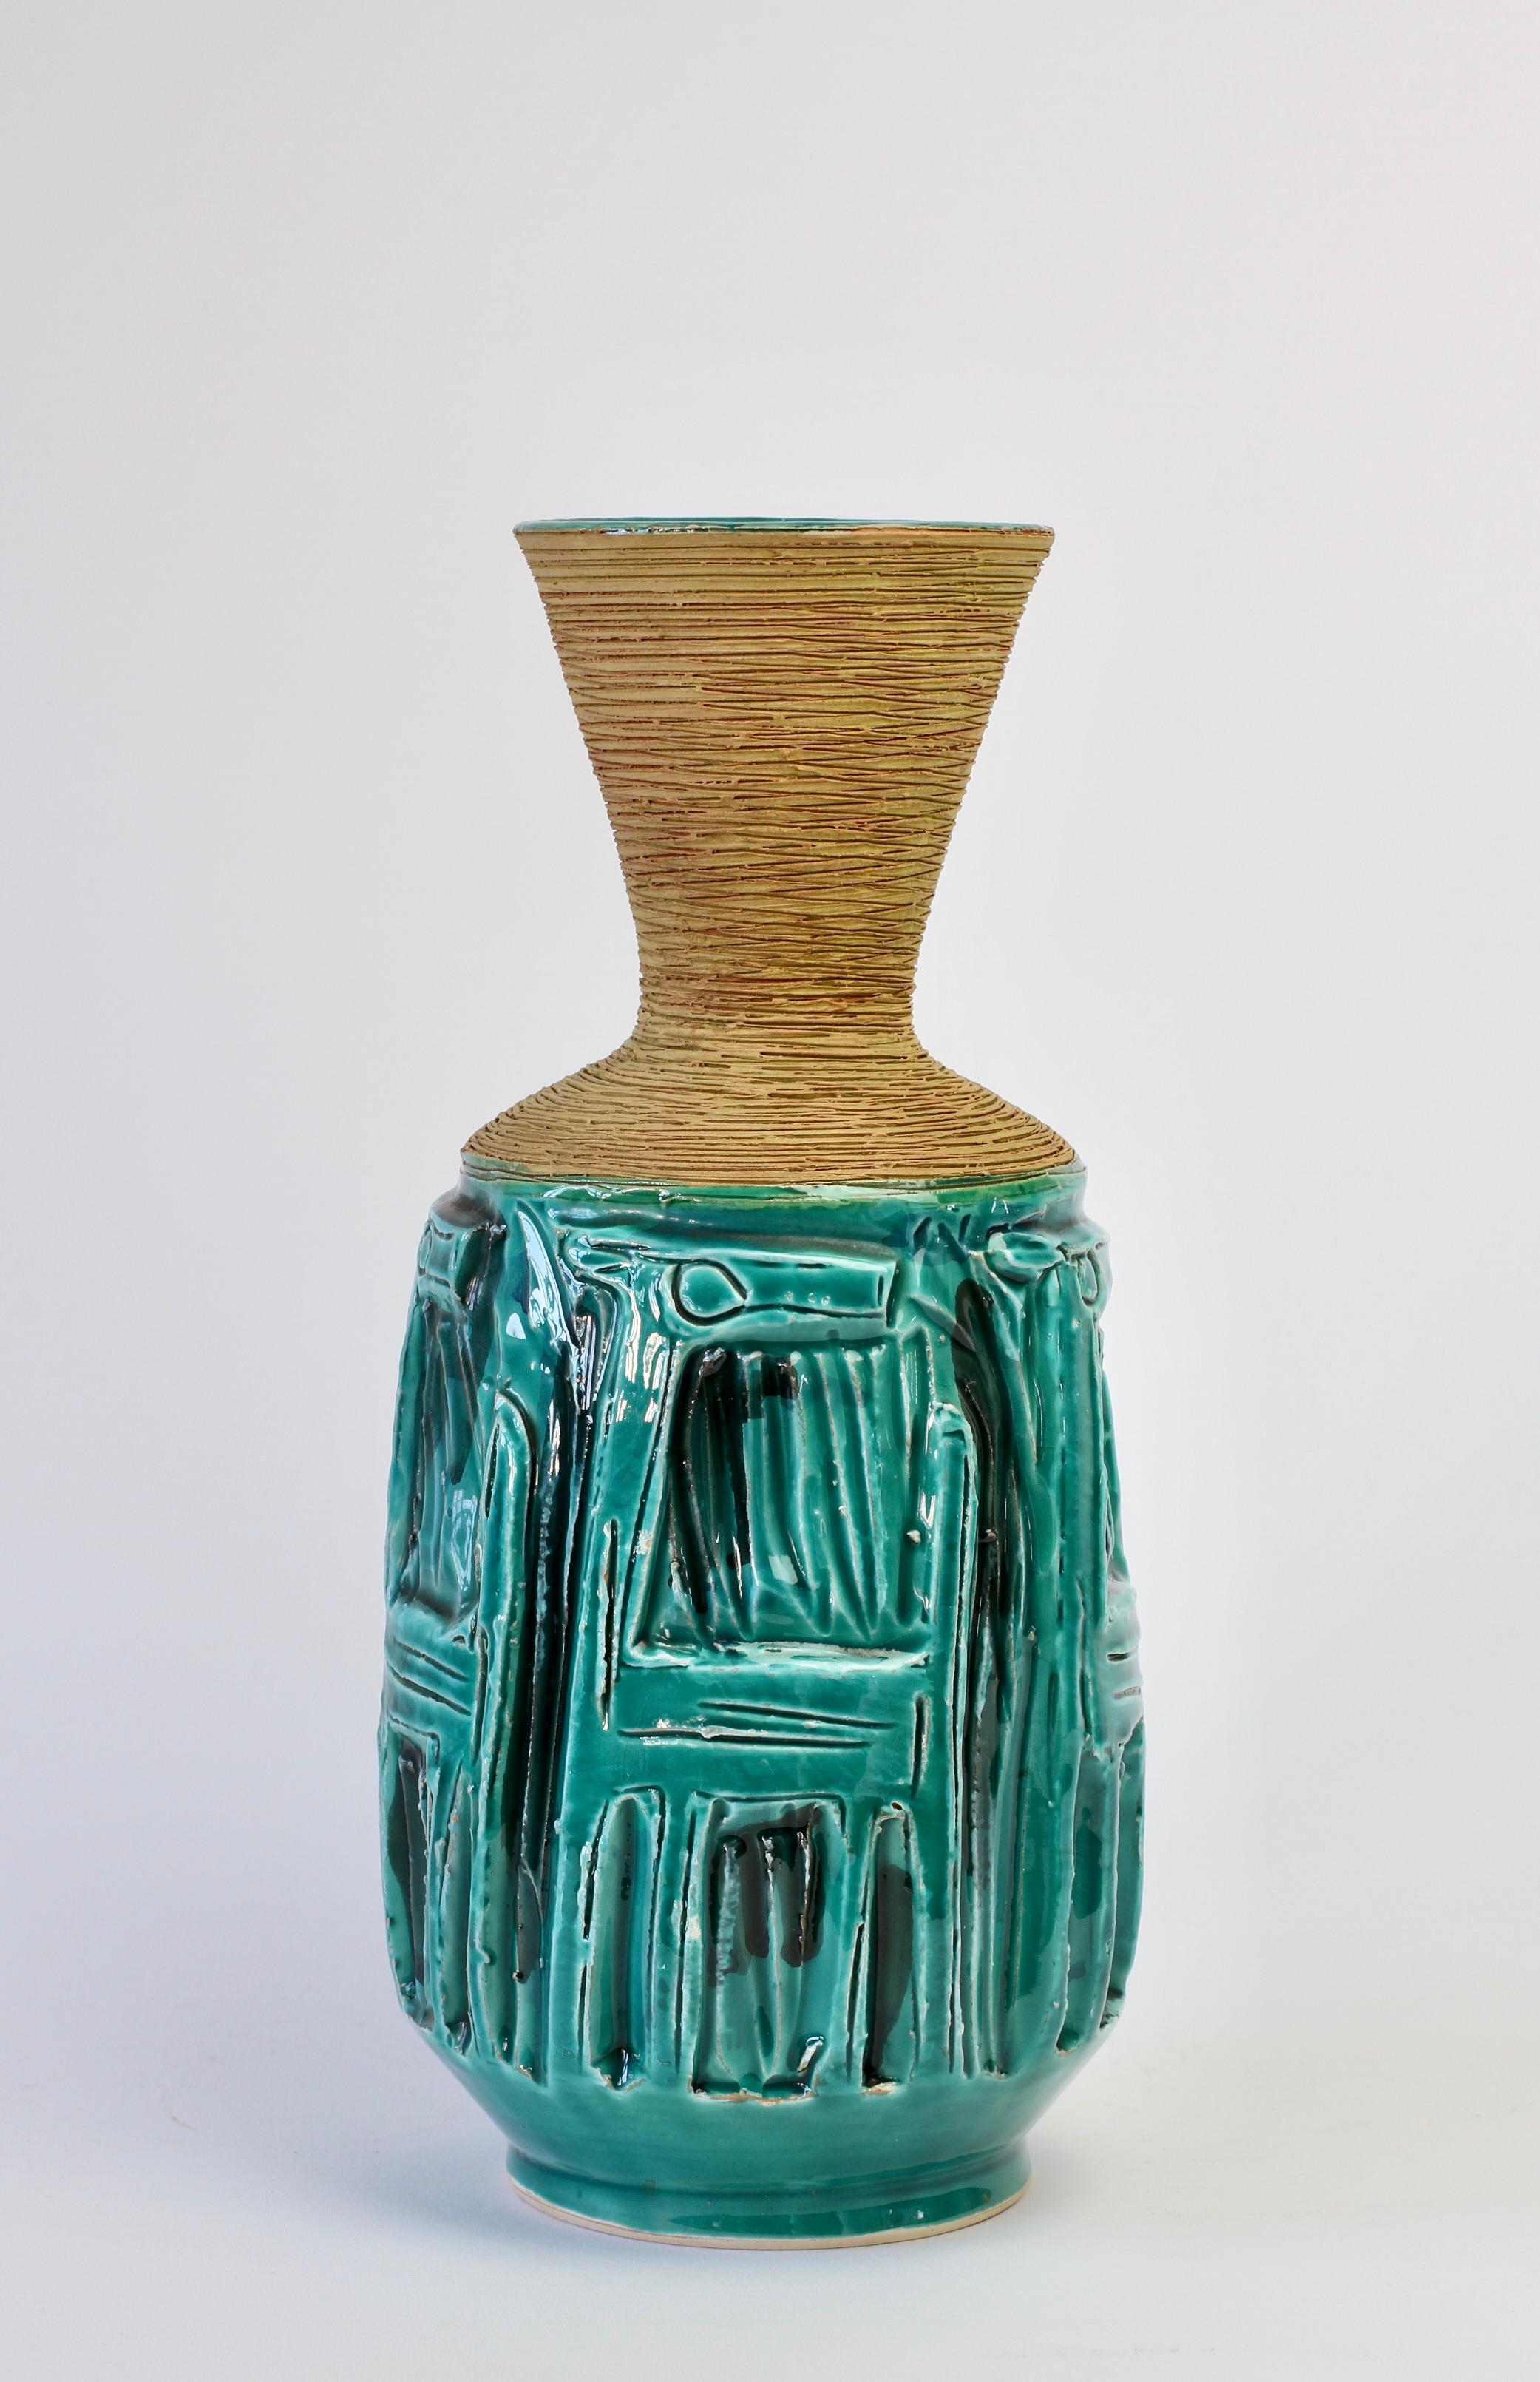 Wunderschön detaillierte Vase in leuchtendem Türkis (grün/blau) mit strukturierter Sgraffito-Schulter und -Hals von Fratelli Fanciullacci, Italien, ca. 1960er Jahre. Wunderschönes, skurriles, geprägtes Tiermuster, möglicherweise ein Hund. Schöne